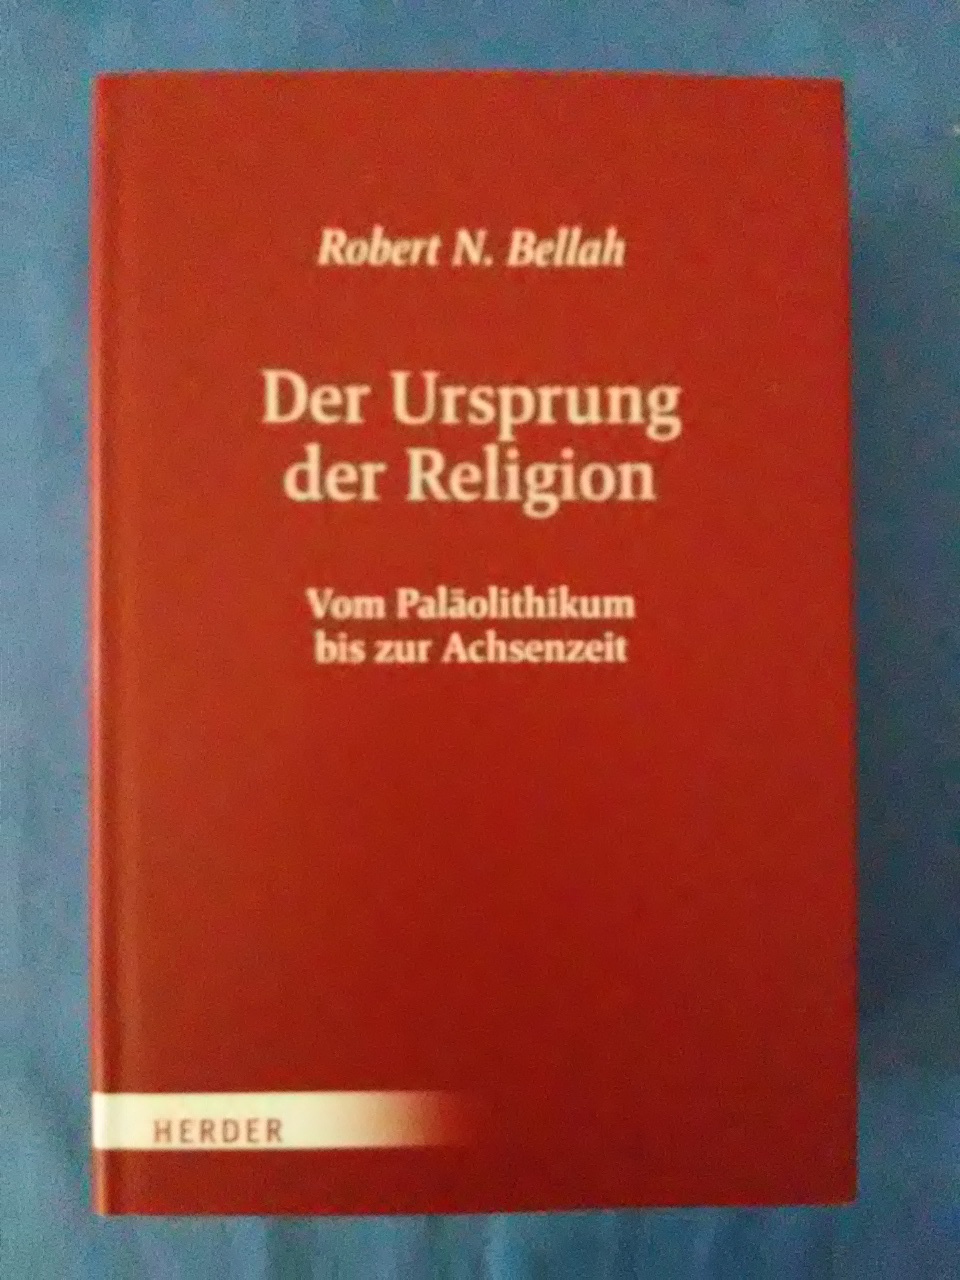 Der Ursprung der Religion : Vom Paläolithikum bis zur Achsenzeit. Robert N. Bellah. - BELLAH, Robert N. und Hans (Herausgeber) Joas